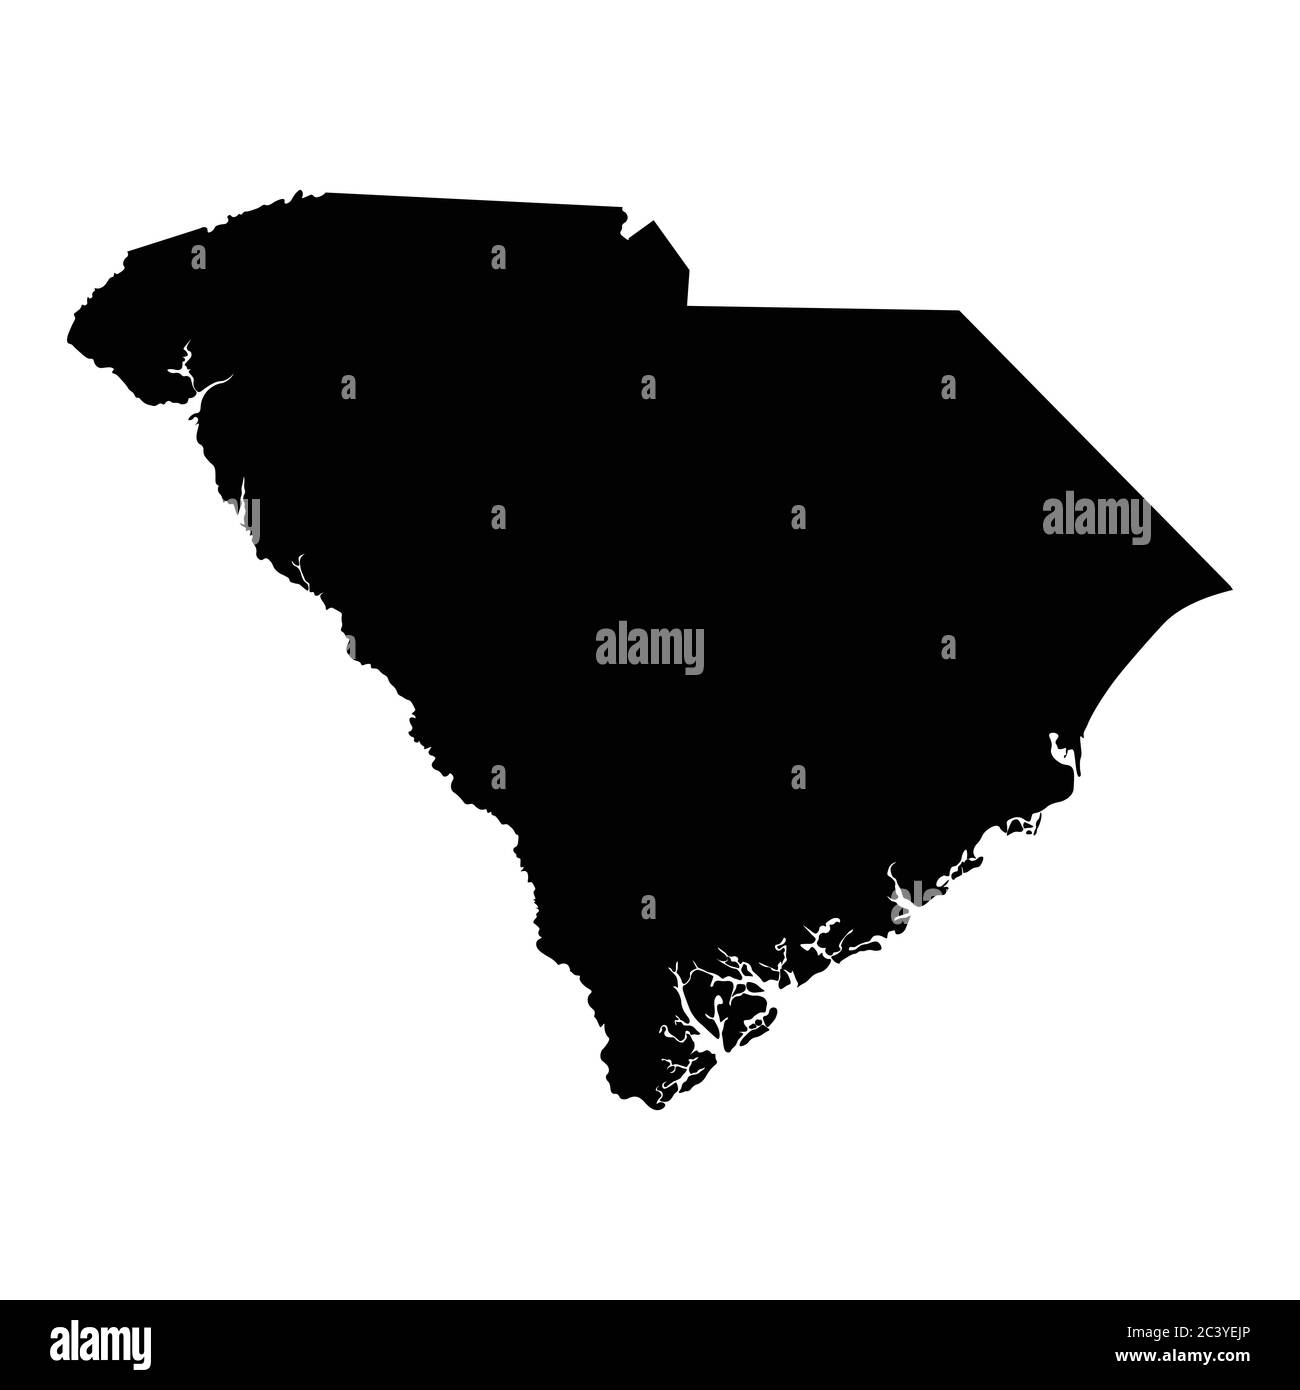 South Carolina SC State Map USA. Schwarze Silhouette solide Karte isolierte Karten auf weißem Hintergrund. EPS-Vektor Stock Vektor